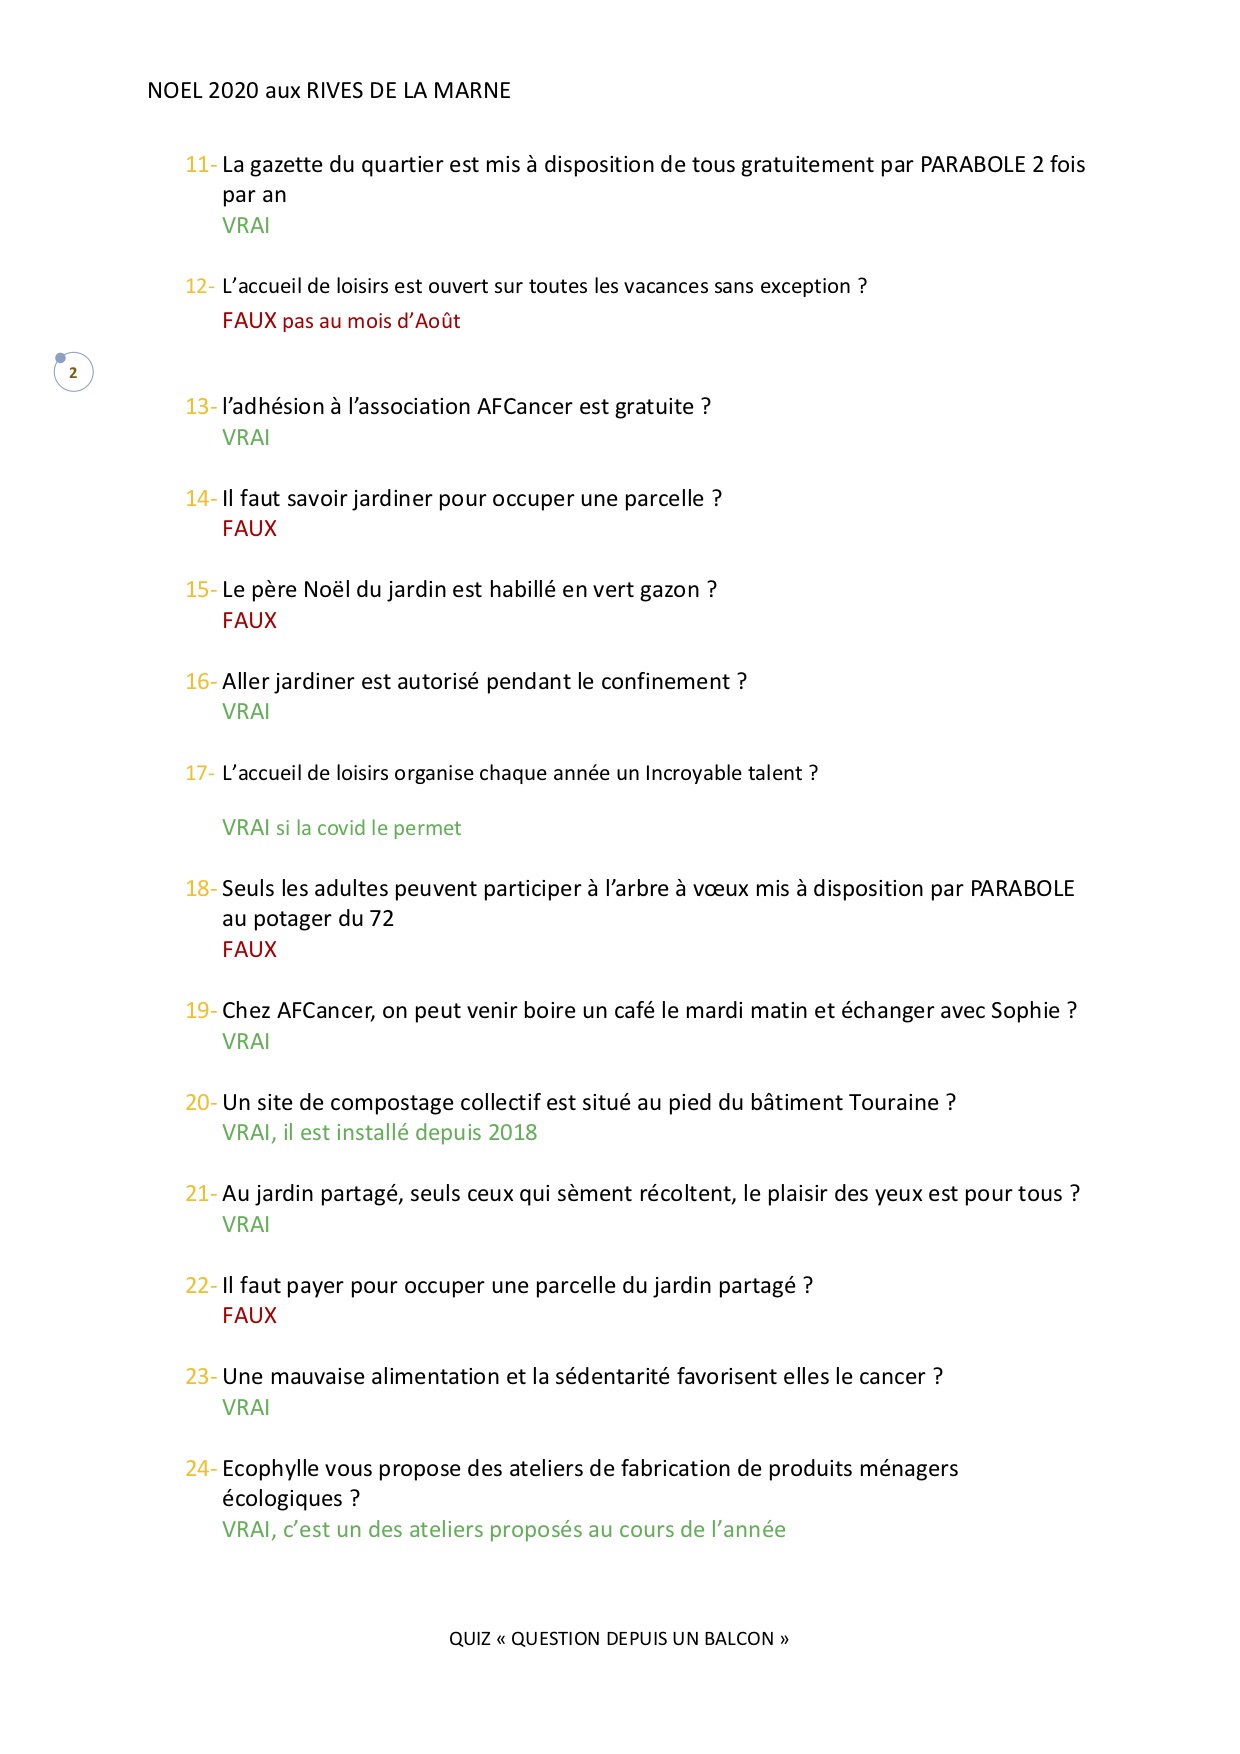 QUIZ QUESTION POUR UN BALCON_questions  mélangées Page 2